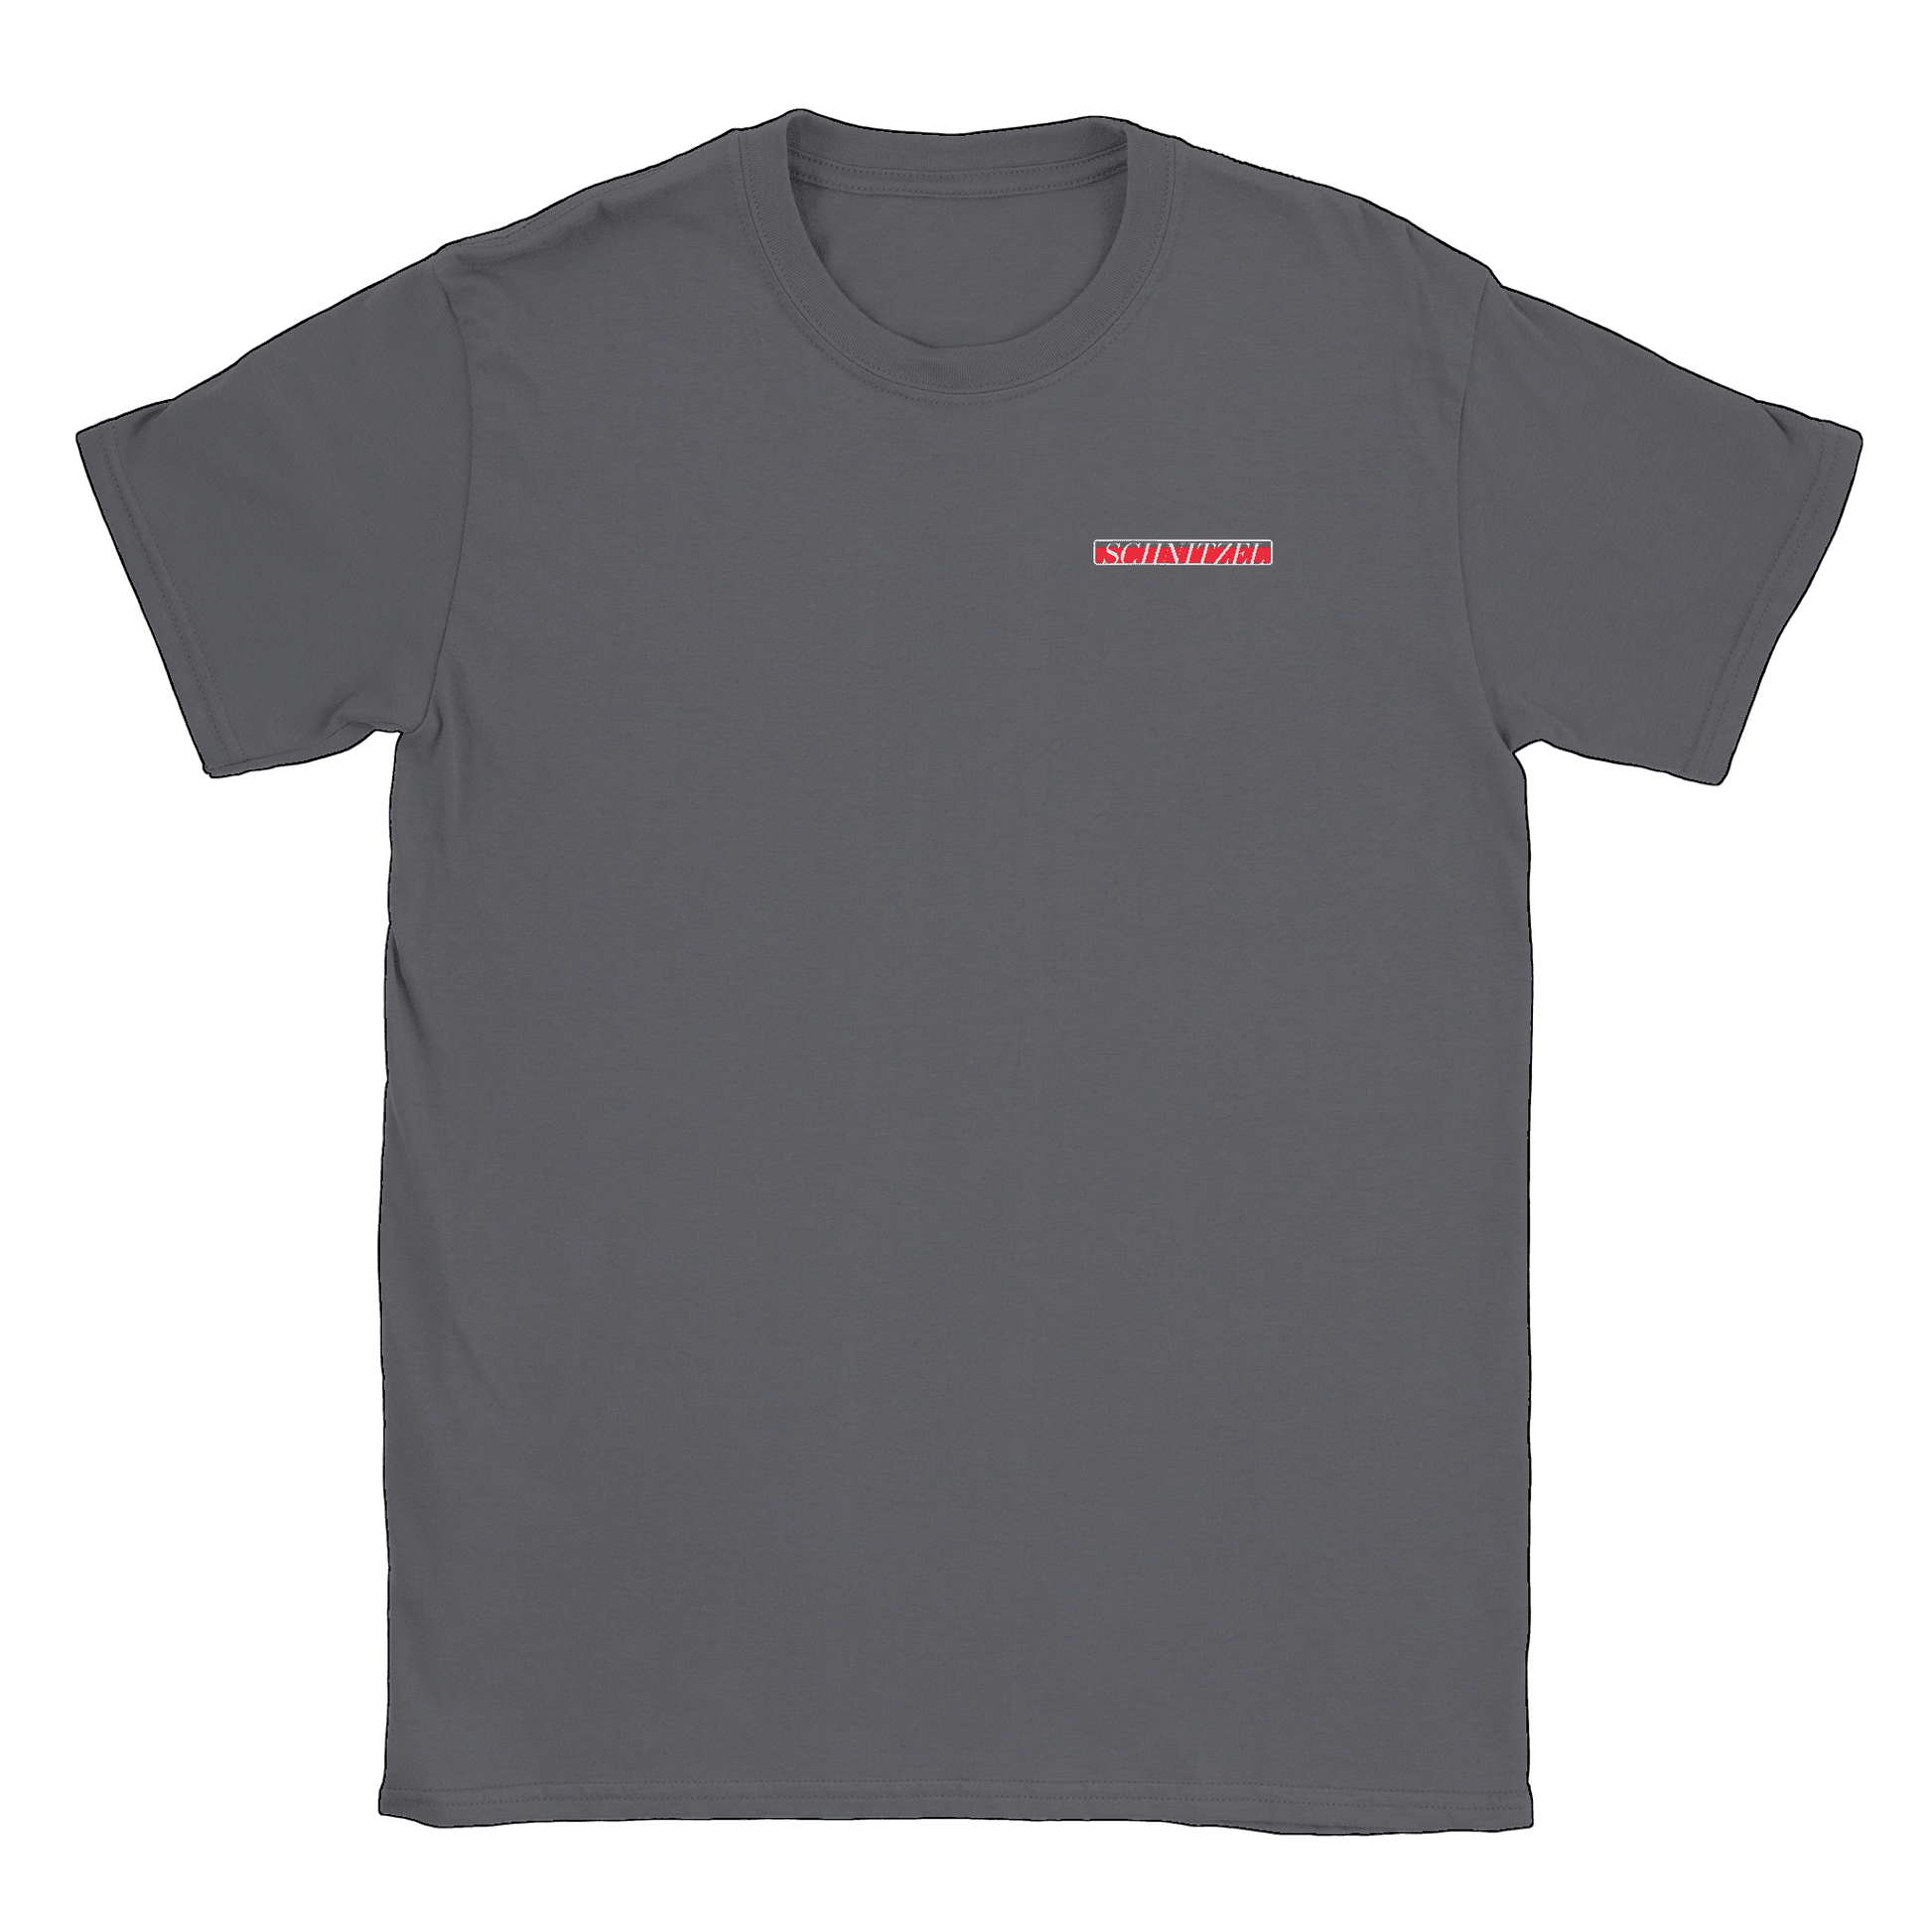 Schnitzel - T-shirt Charcoal